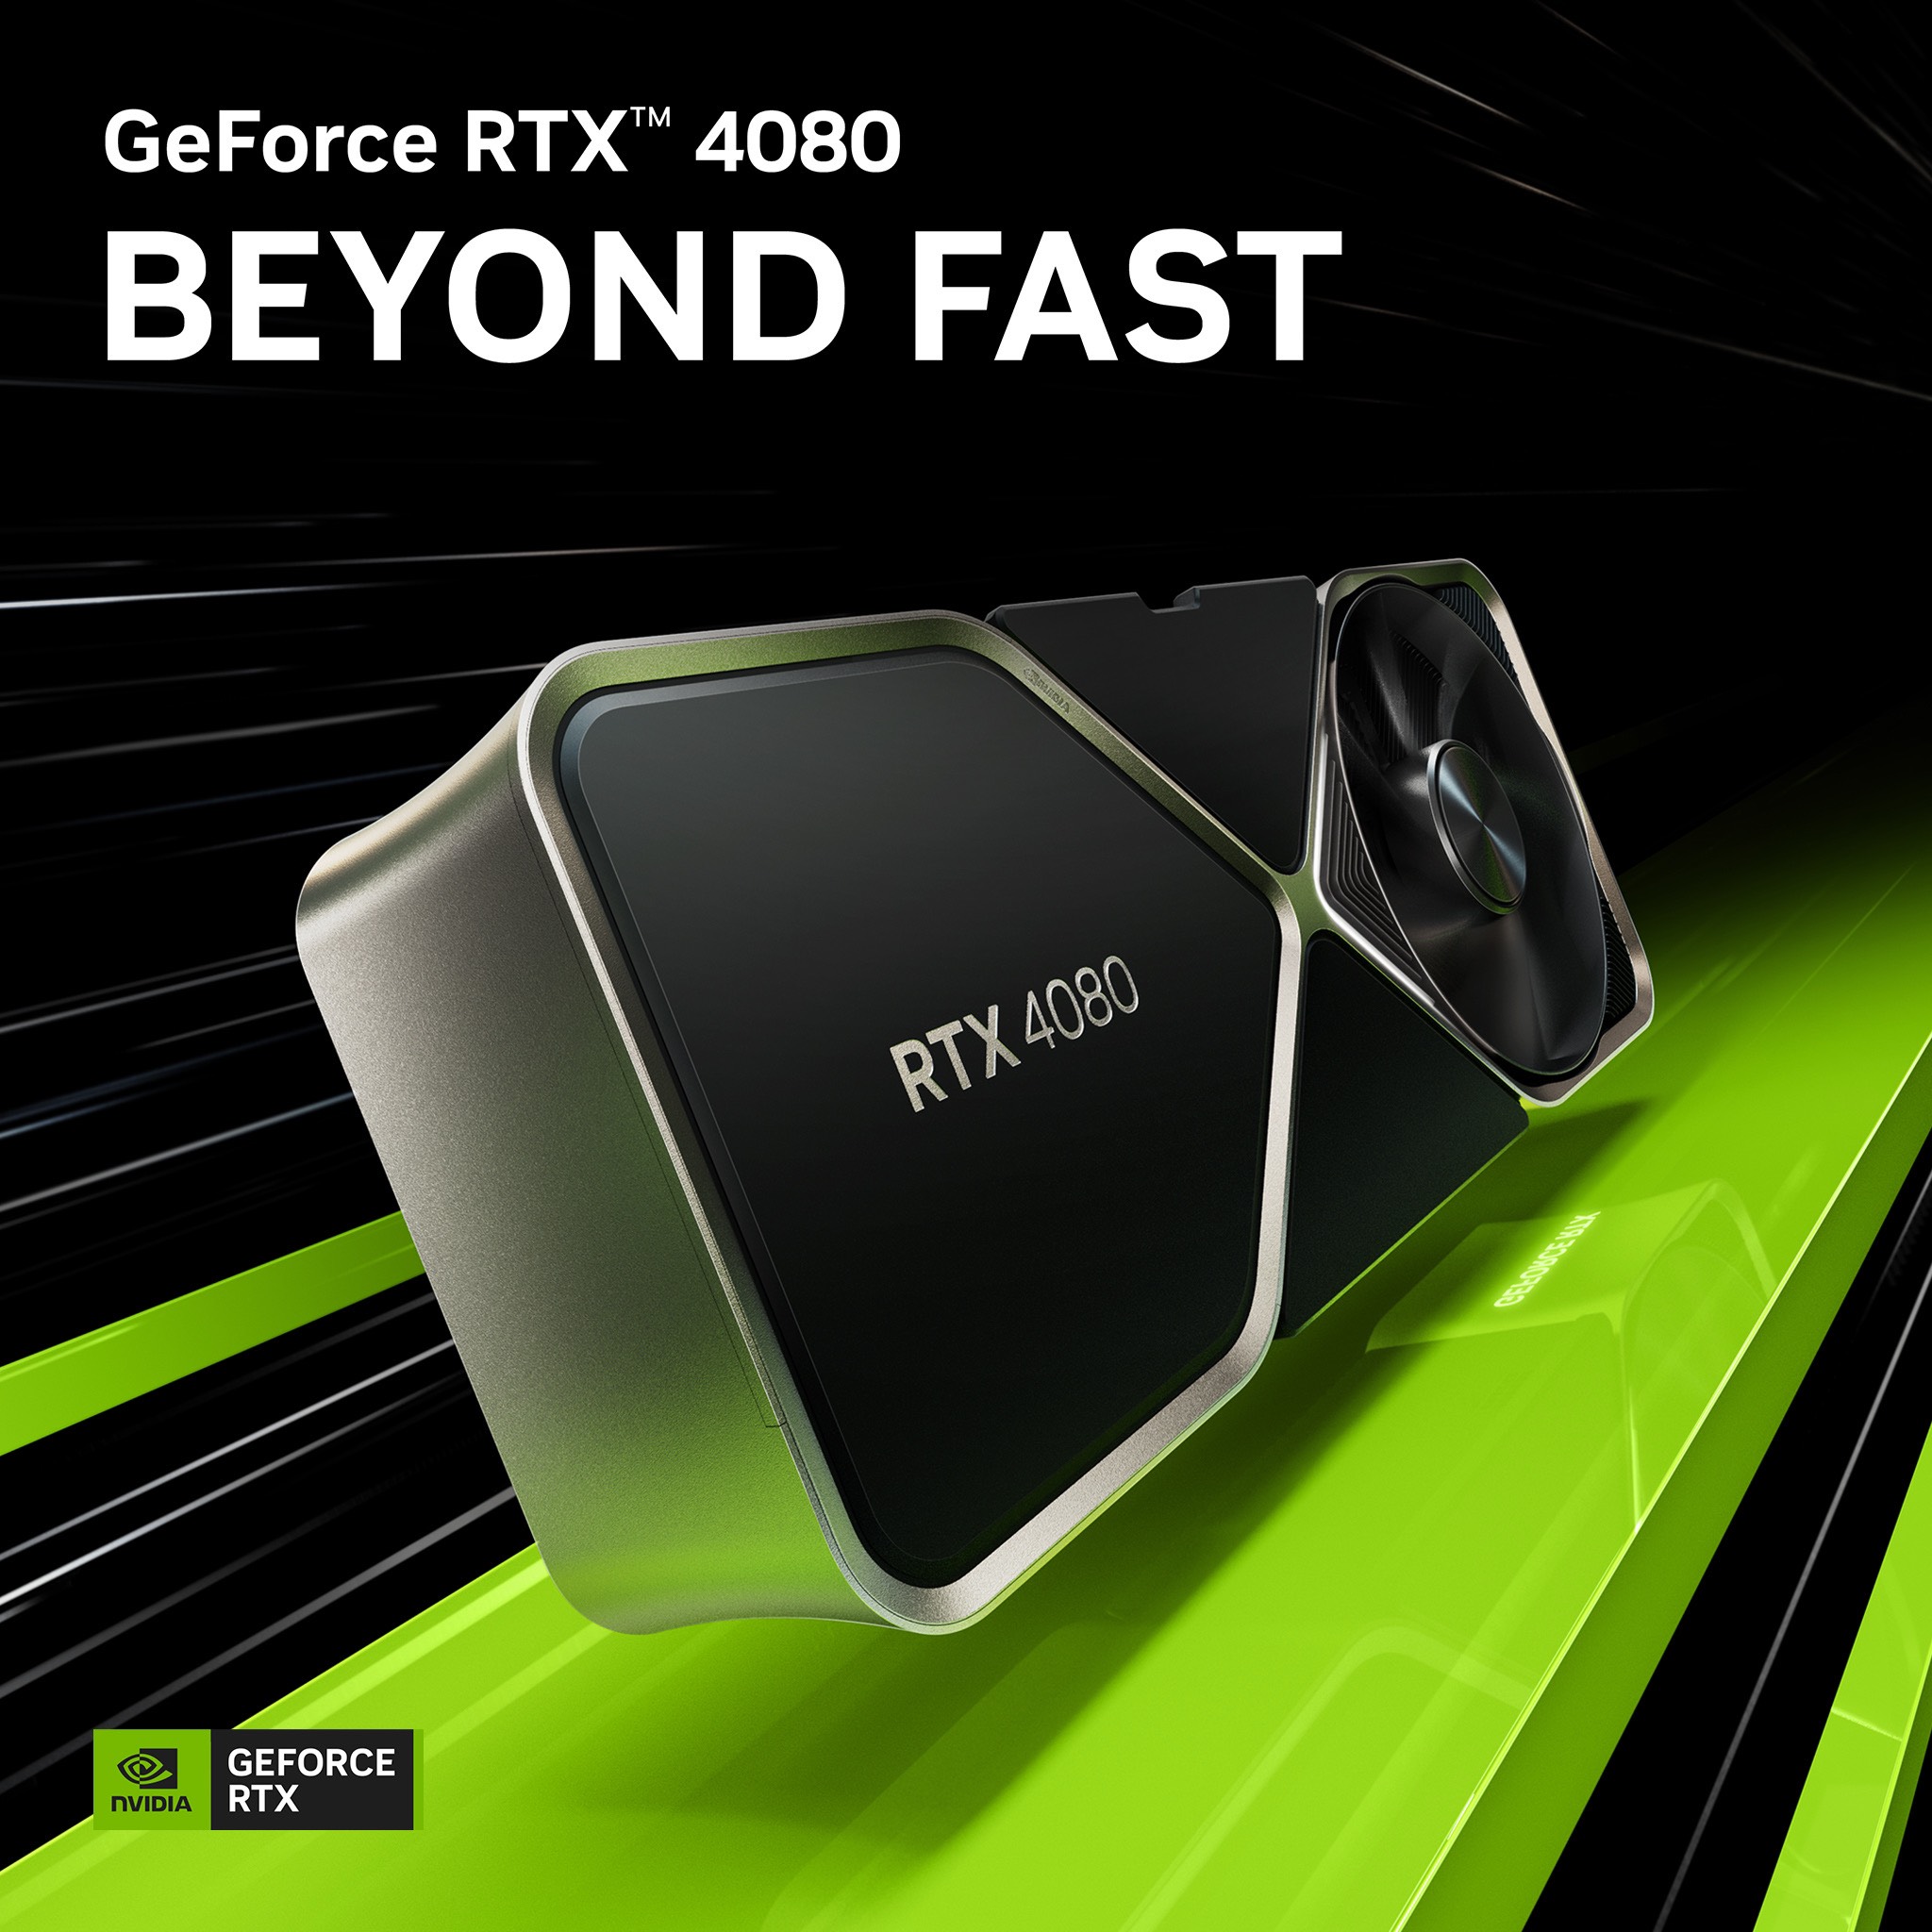 NVIDIA ra mắt card đồ họa GeForce RTX 4080 tốc độ vượt trội